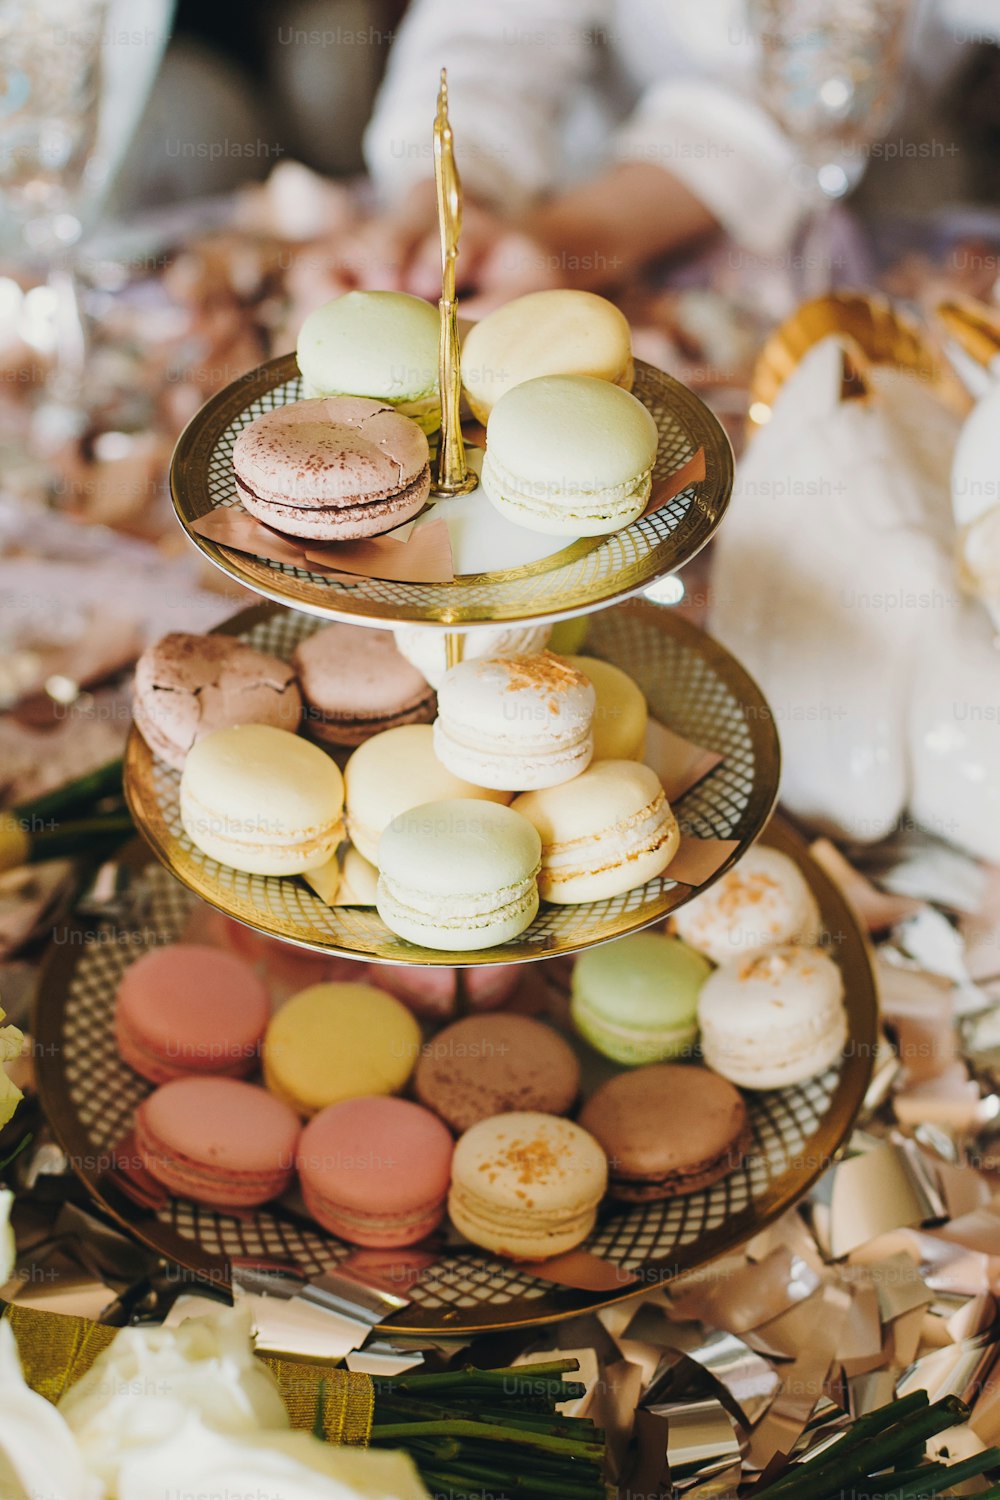 Deliciosos macarons de colores en un hermoso soporte vintage con adornos dorados sobre la mesa con confeti dorado y plateado. Catering de lujo. Despedida de soltera o baby shower. Macarrones de postre francés